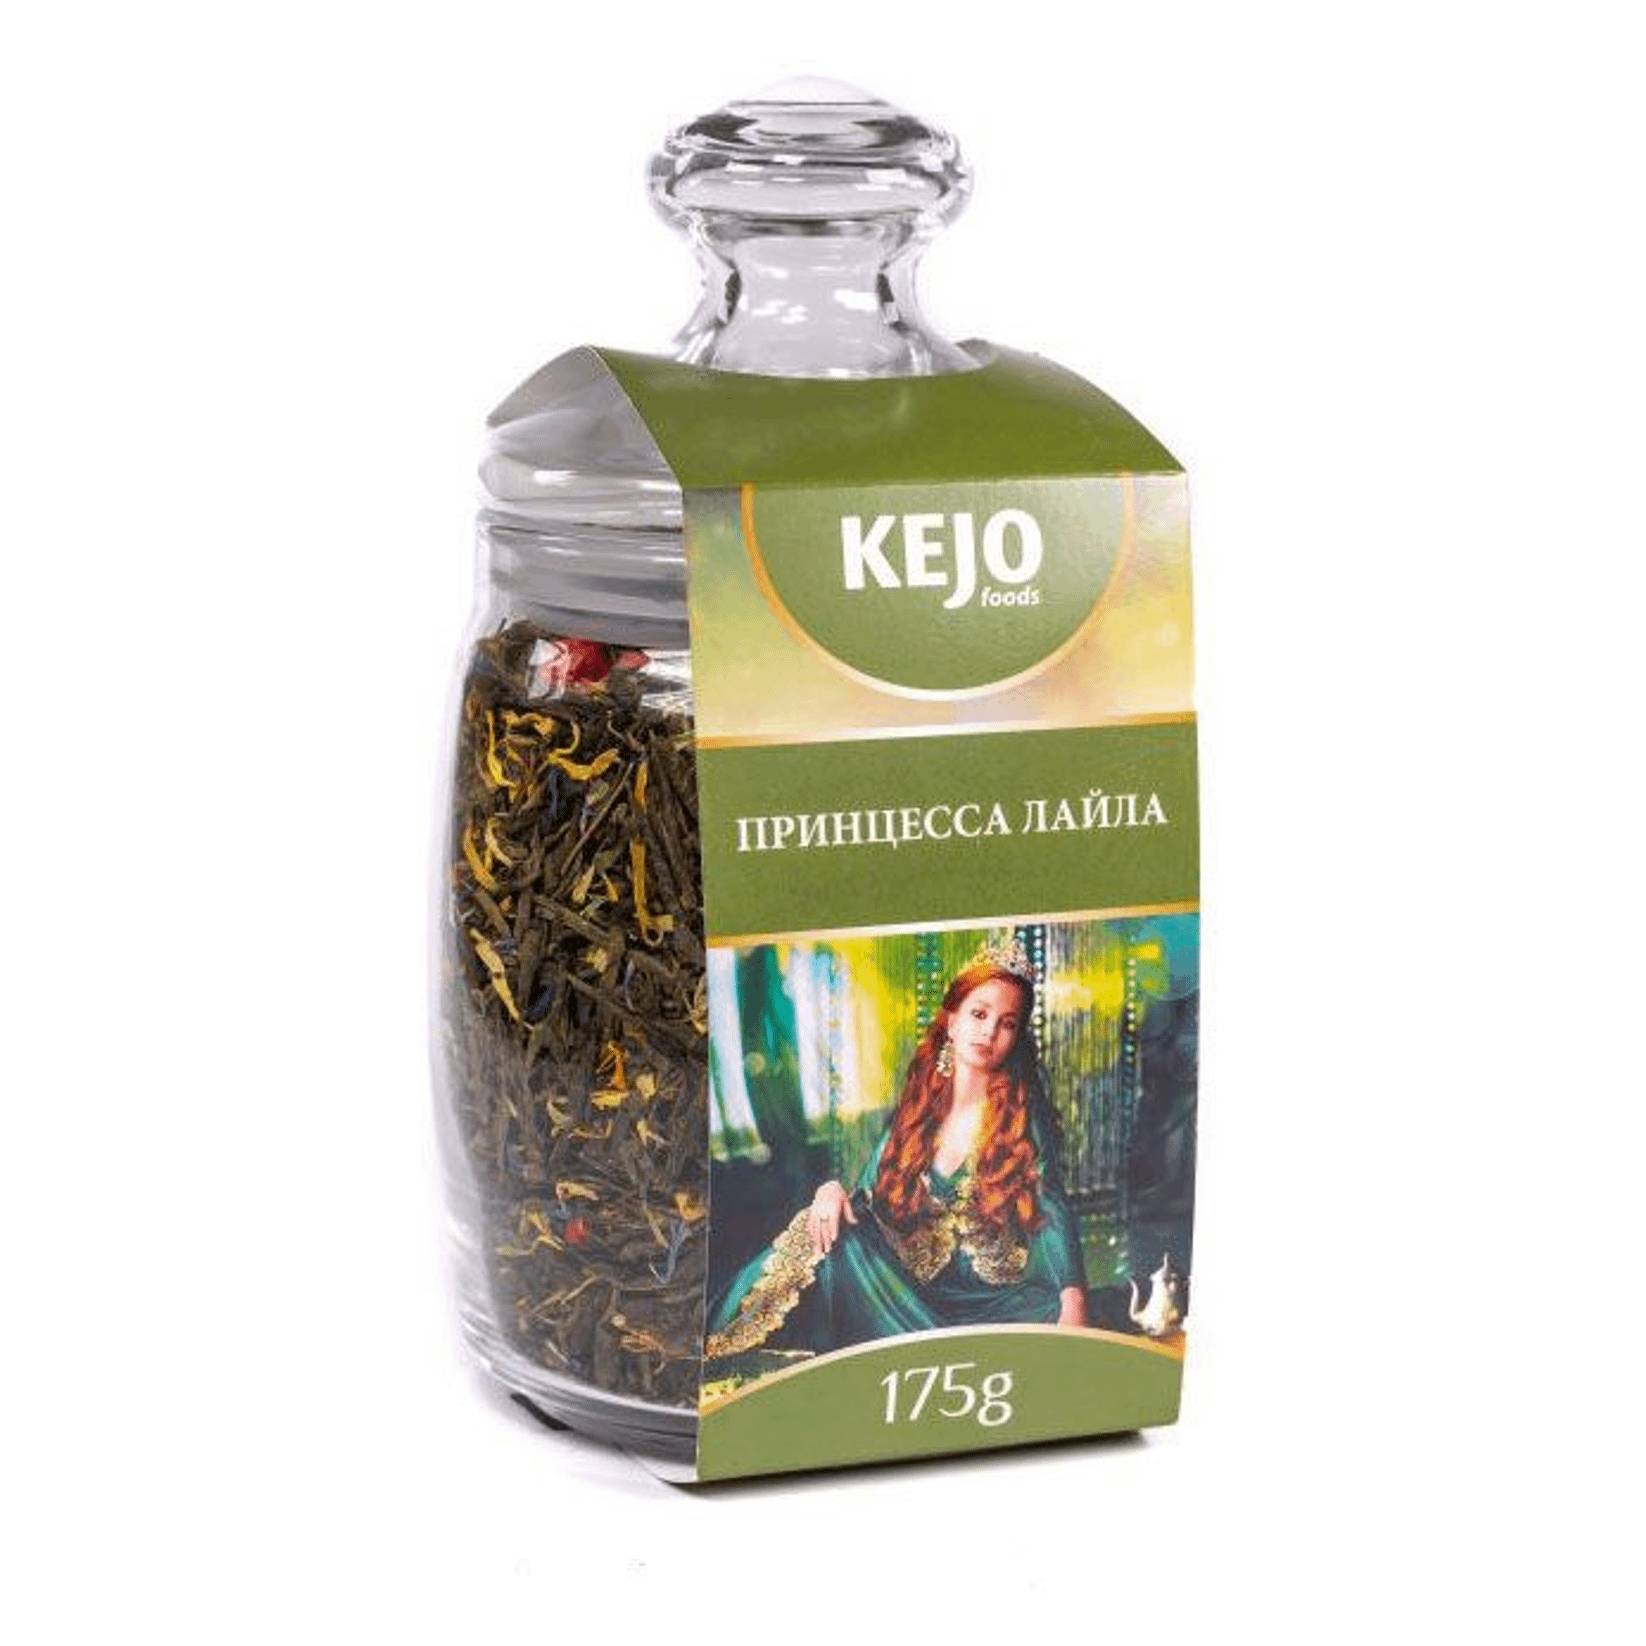 чай зеленый newby восточная сенча 100 г Чай зеленый Kejo Foods принцесса Лайла, 175 г